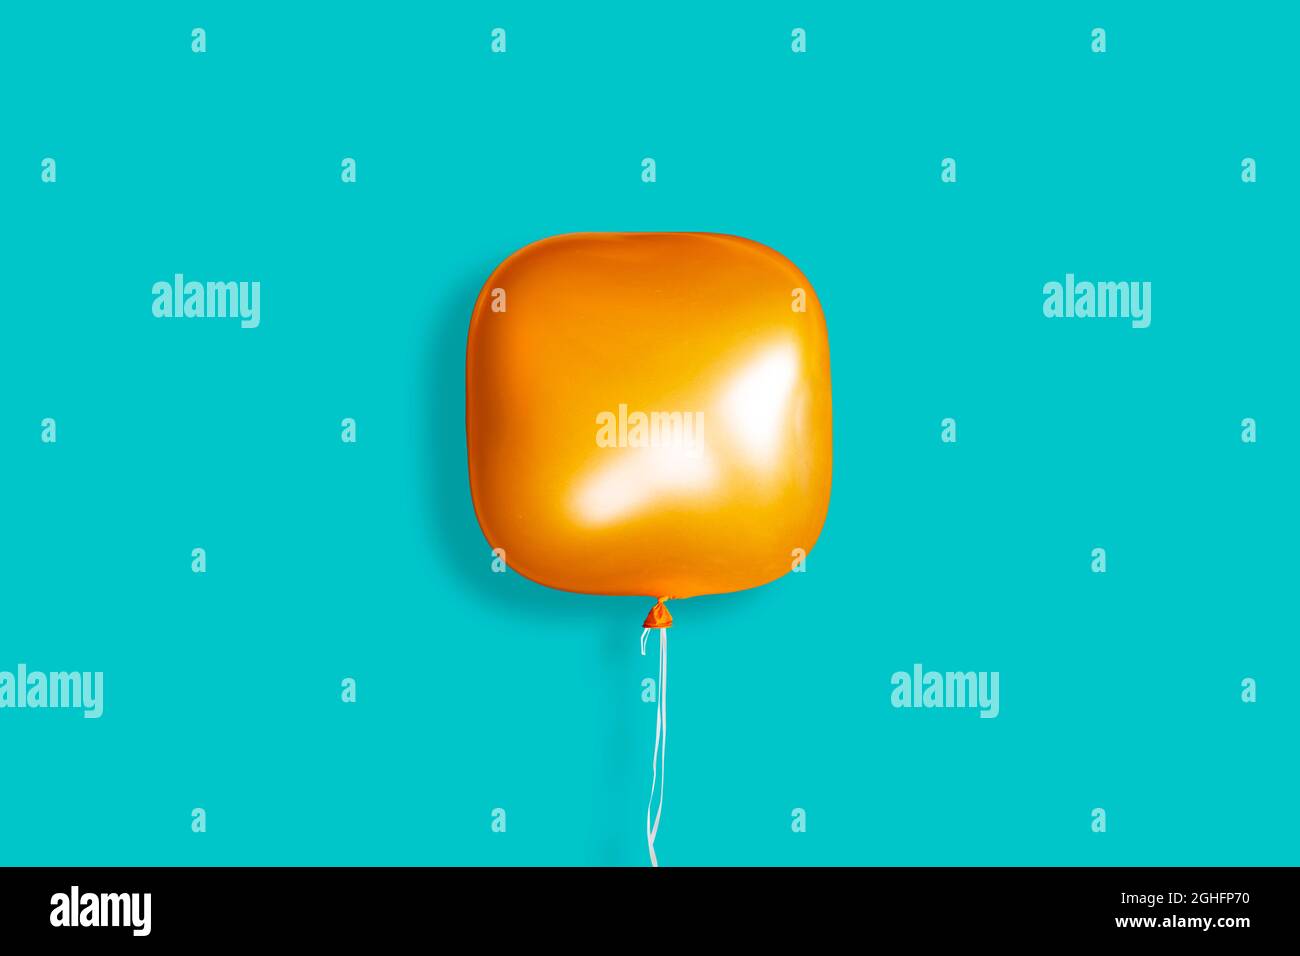 Un ballon orange carré sur fond bleu pastel. Concept d'innovation Banque D'Images